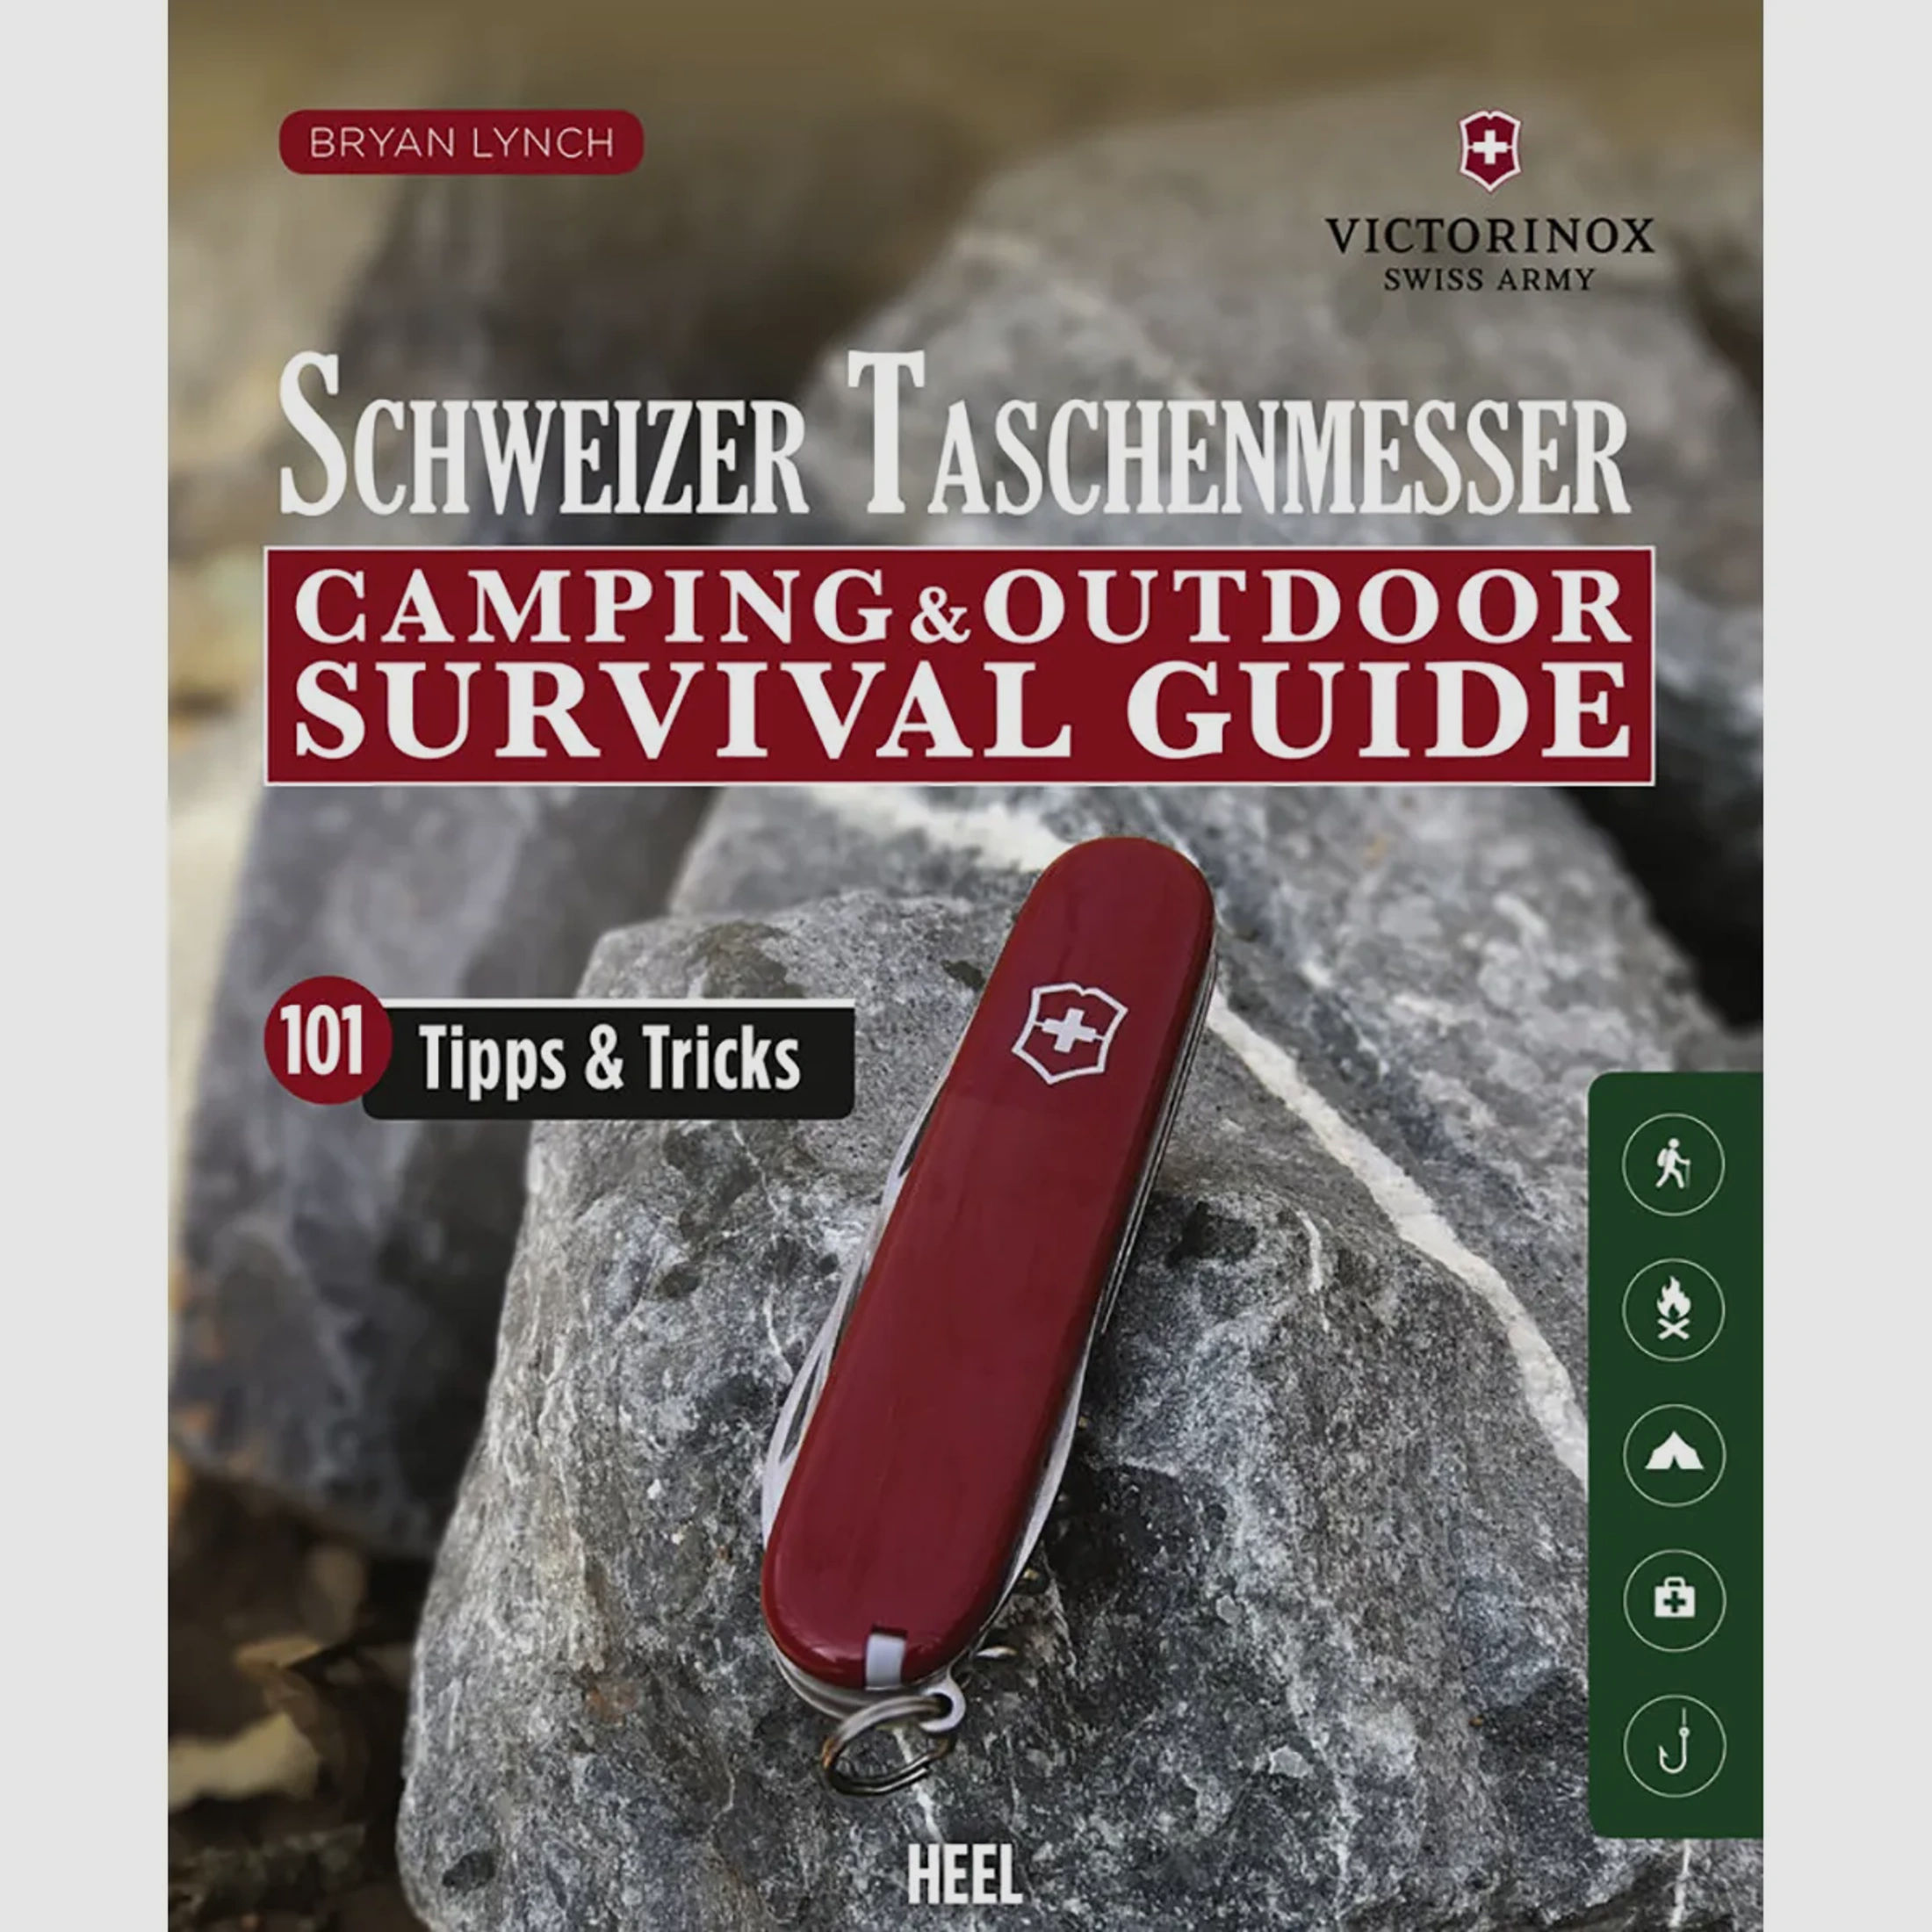 Schweizer Taschenmesser Camping & Outdoor Survival Guide